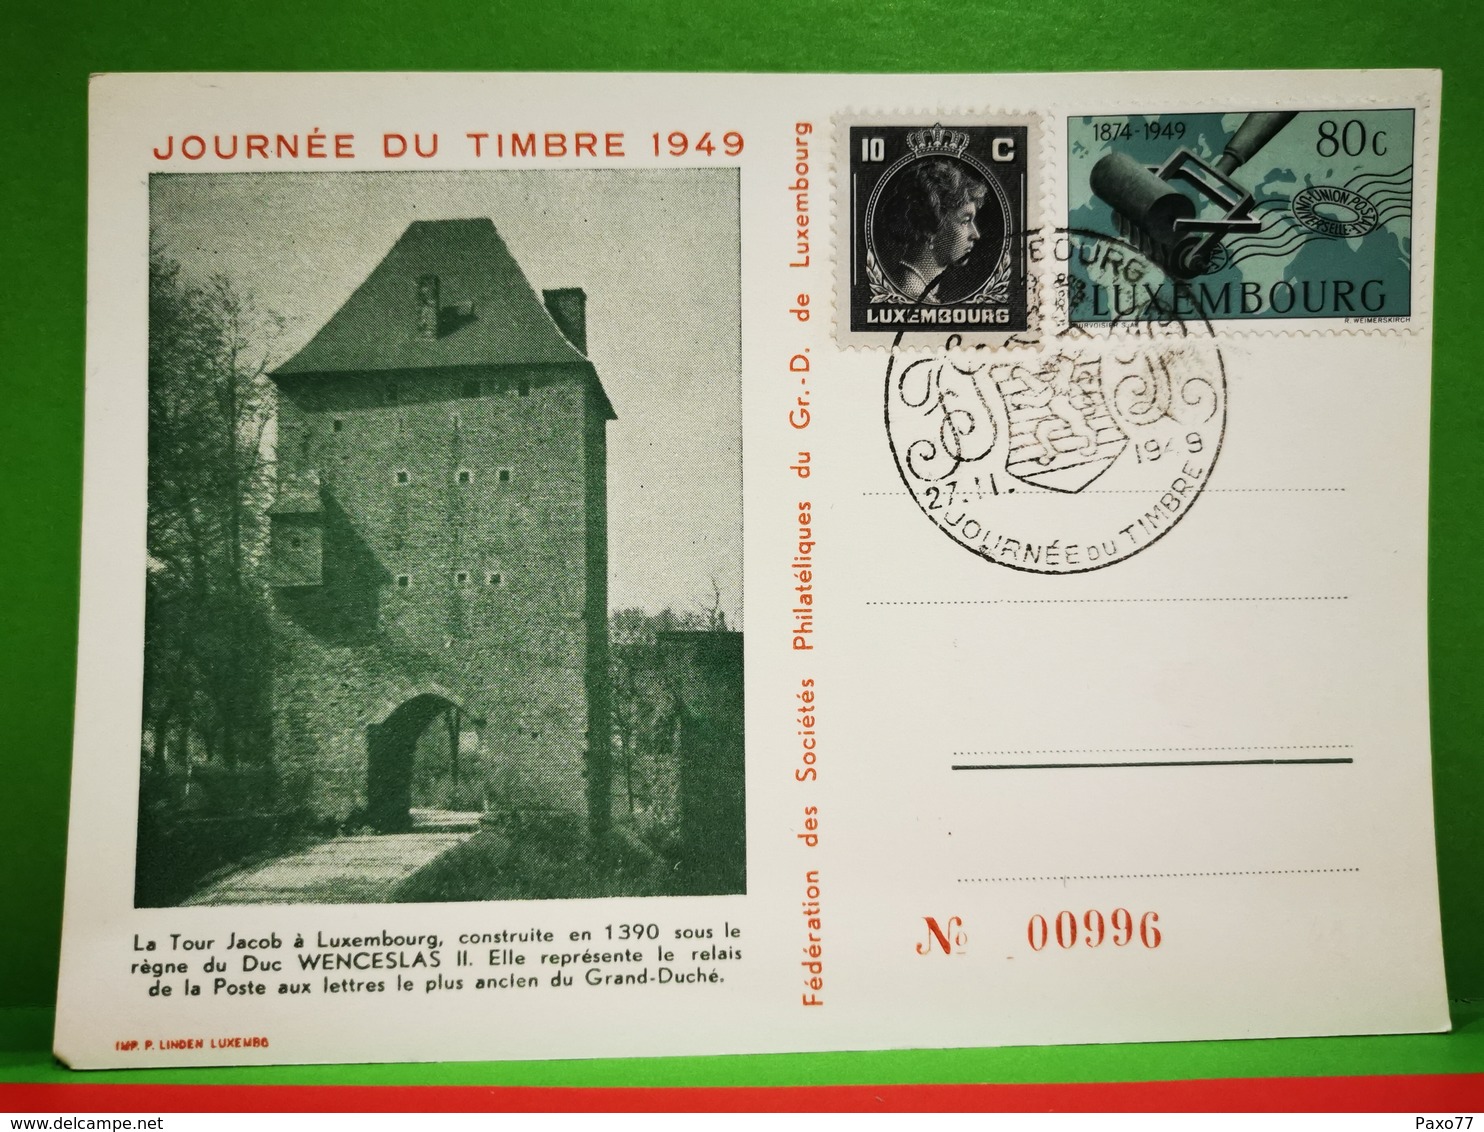 Luxembourg, Journée Nationale Du Timbre 1949 - Herdenkingskaarten